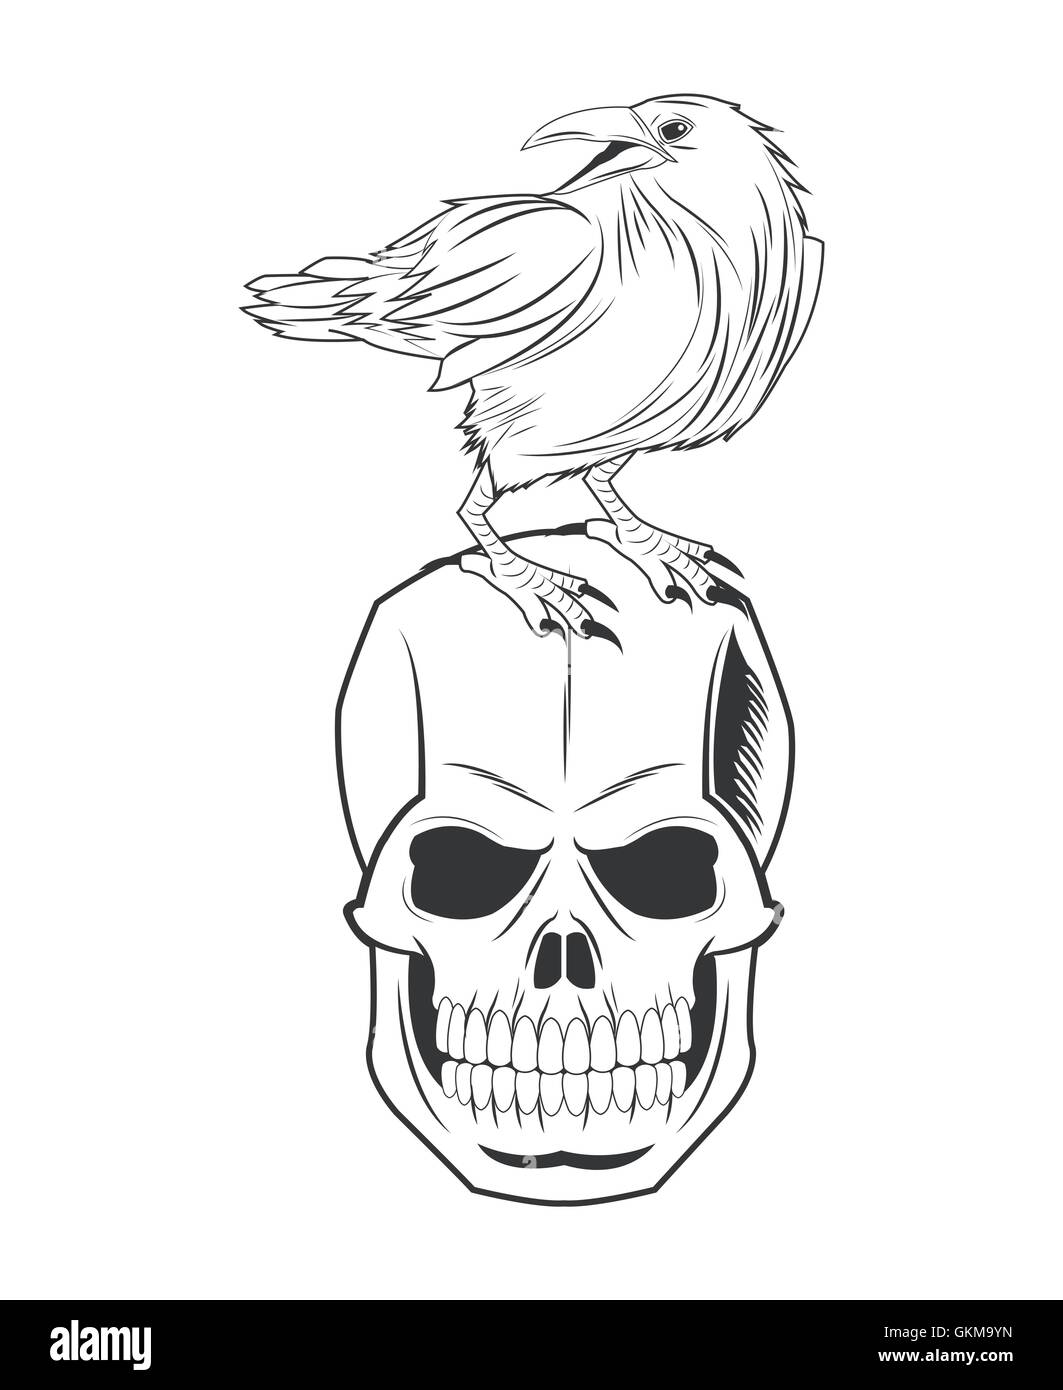 Share 143+ eagle skull tattoo super hot